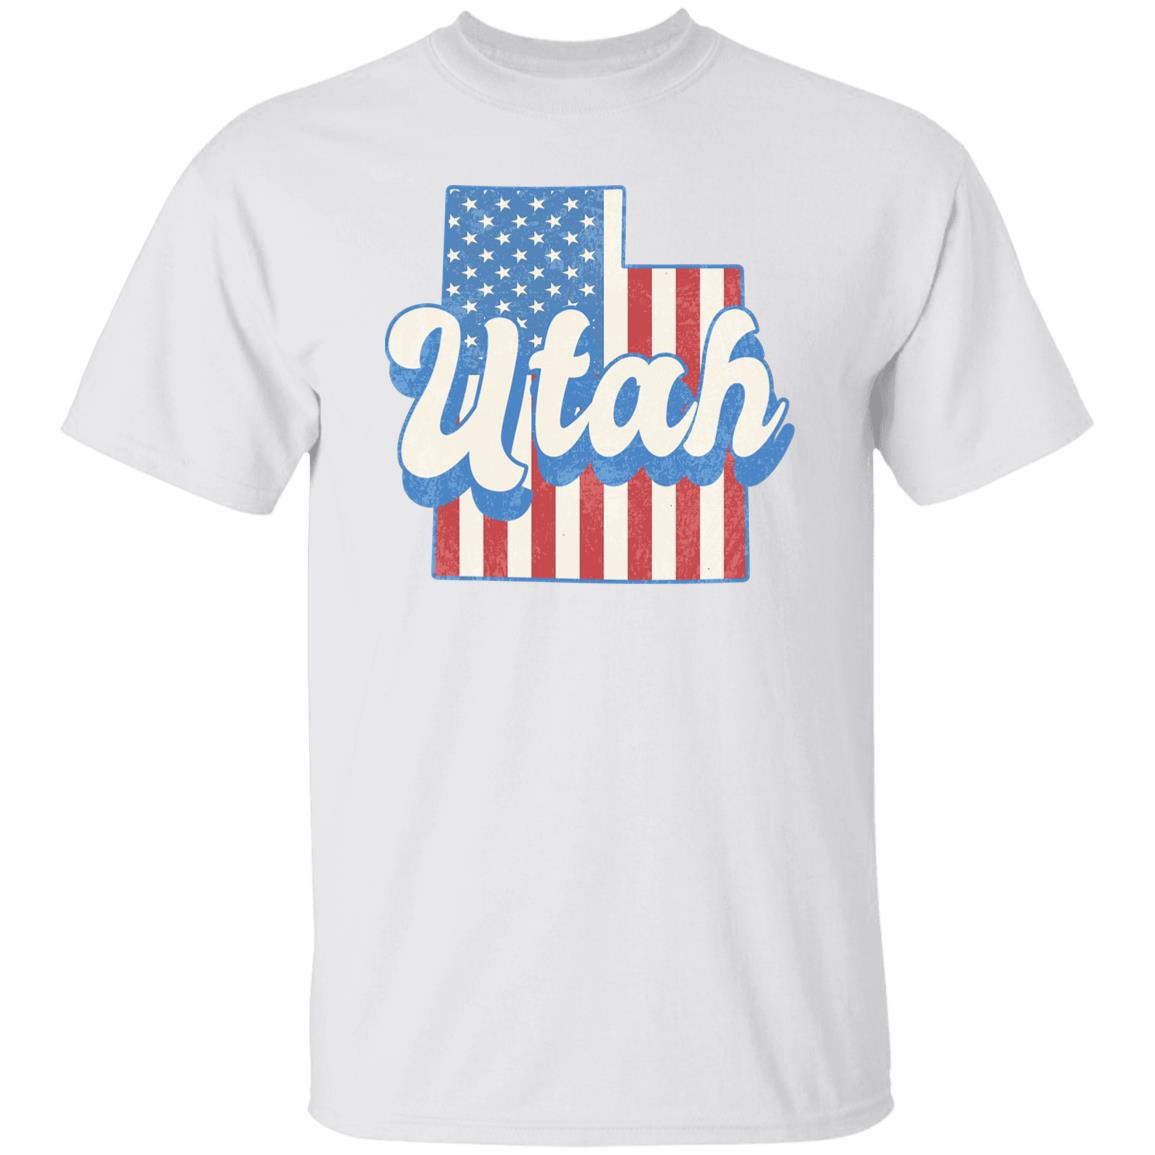 Utah US flag Unisex T-Shirt American patriotic UT state tee White Ash Blue-White-Family-Gift-Planet